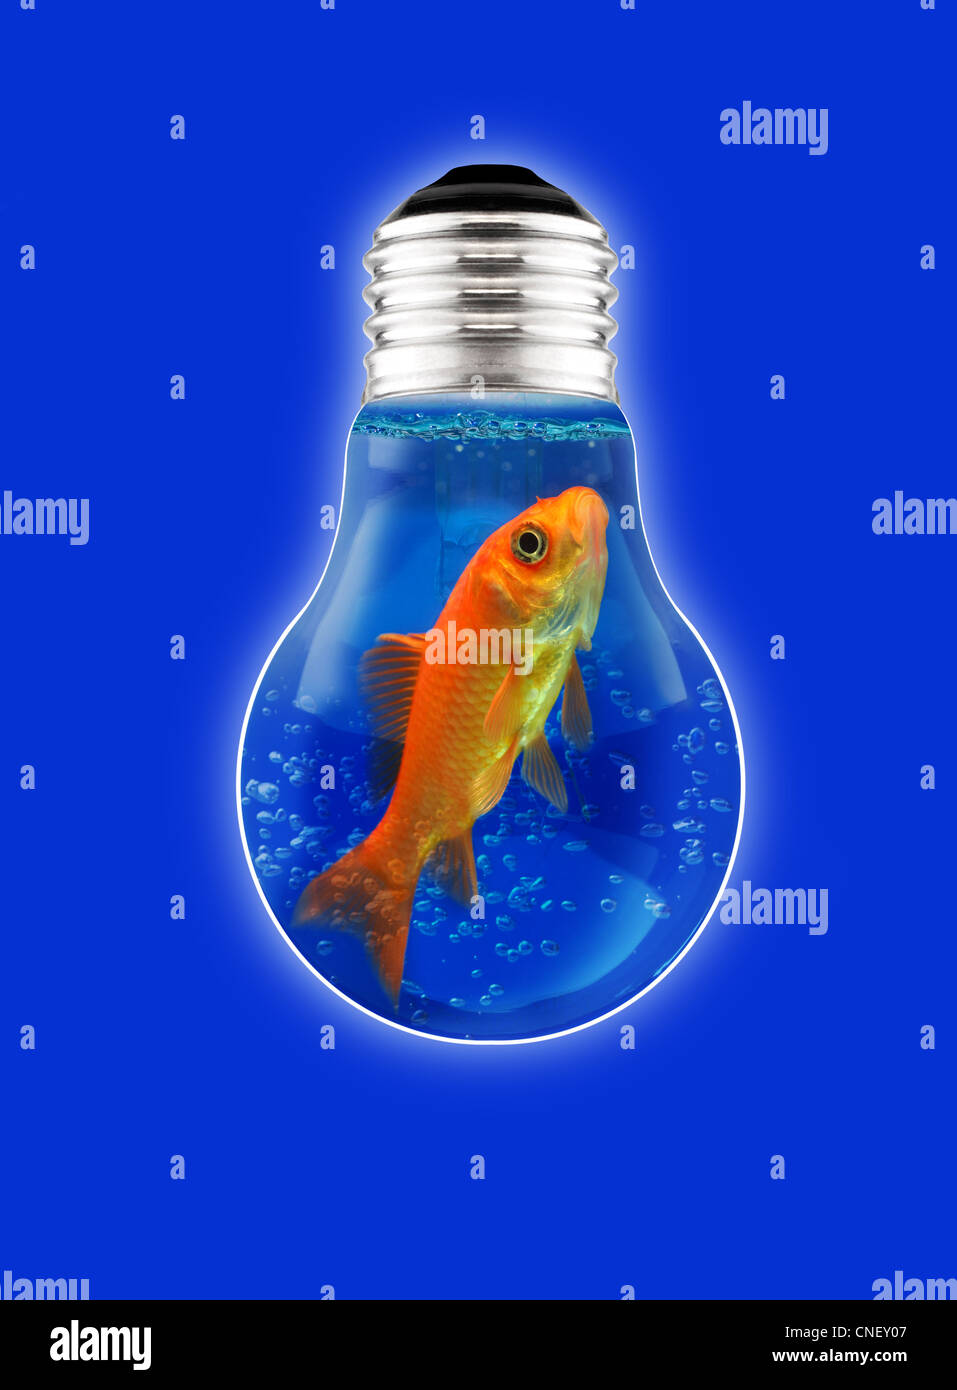 Think tank, gold fish, idea, luz eléctrica, la chispa de la imaginación Foto de stock